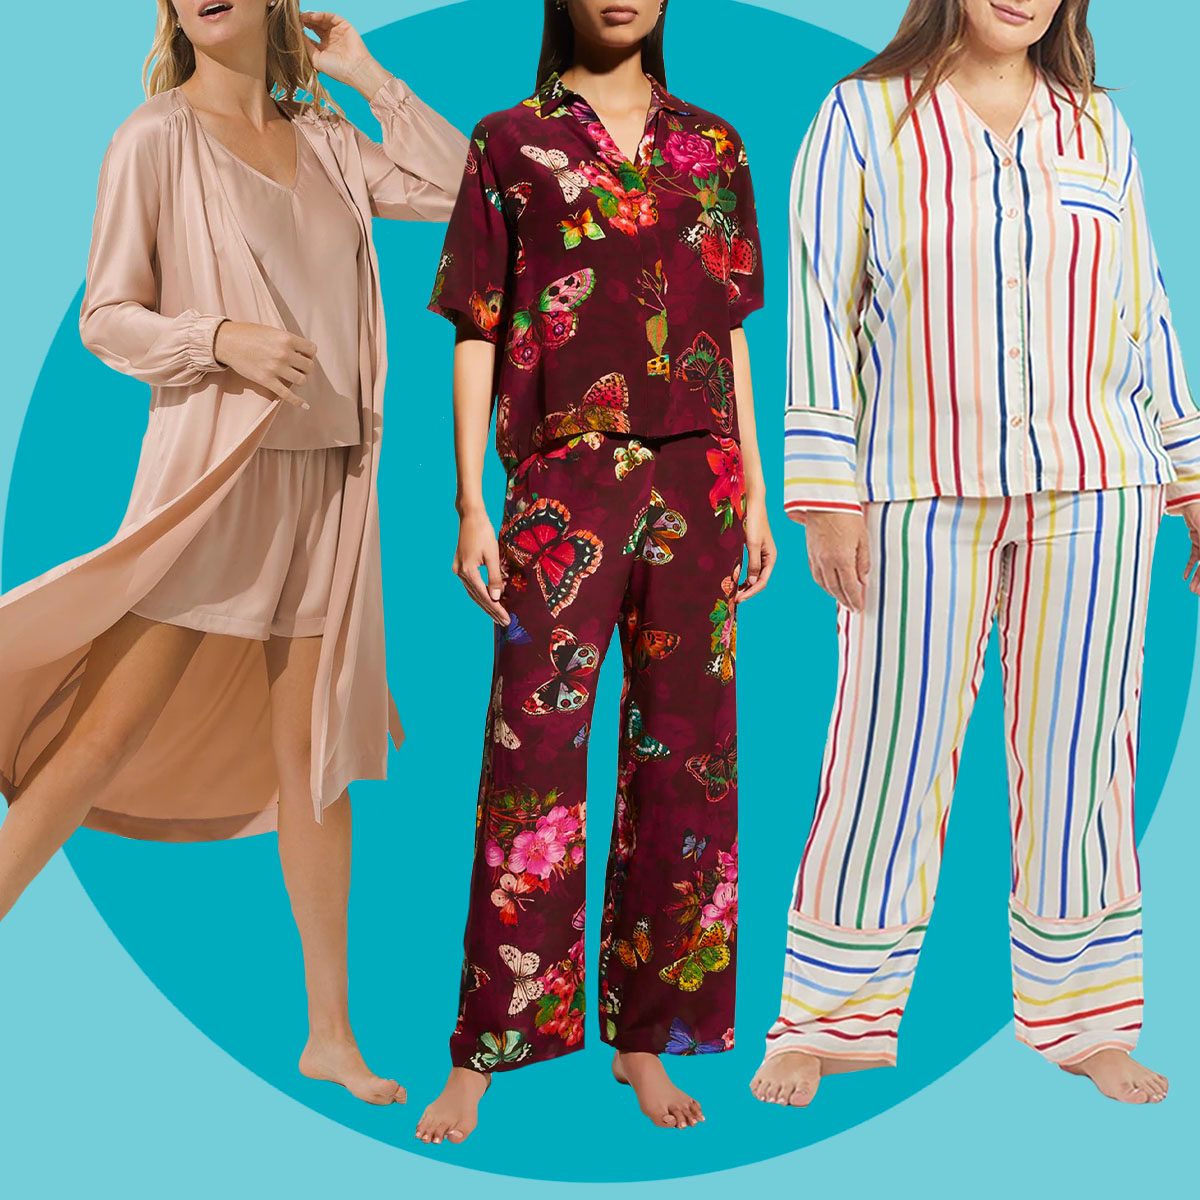  WMQPNNS Silk Pajamas For Women Plus Size 4x Lingerie